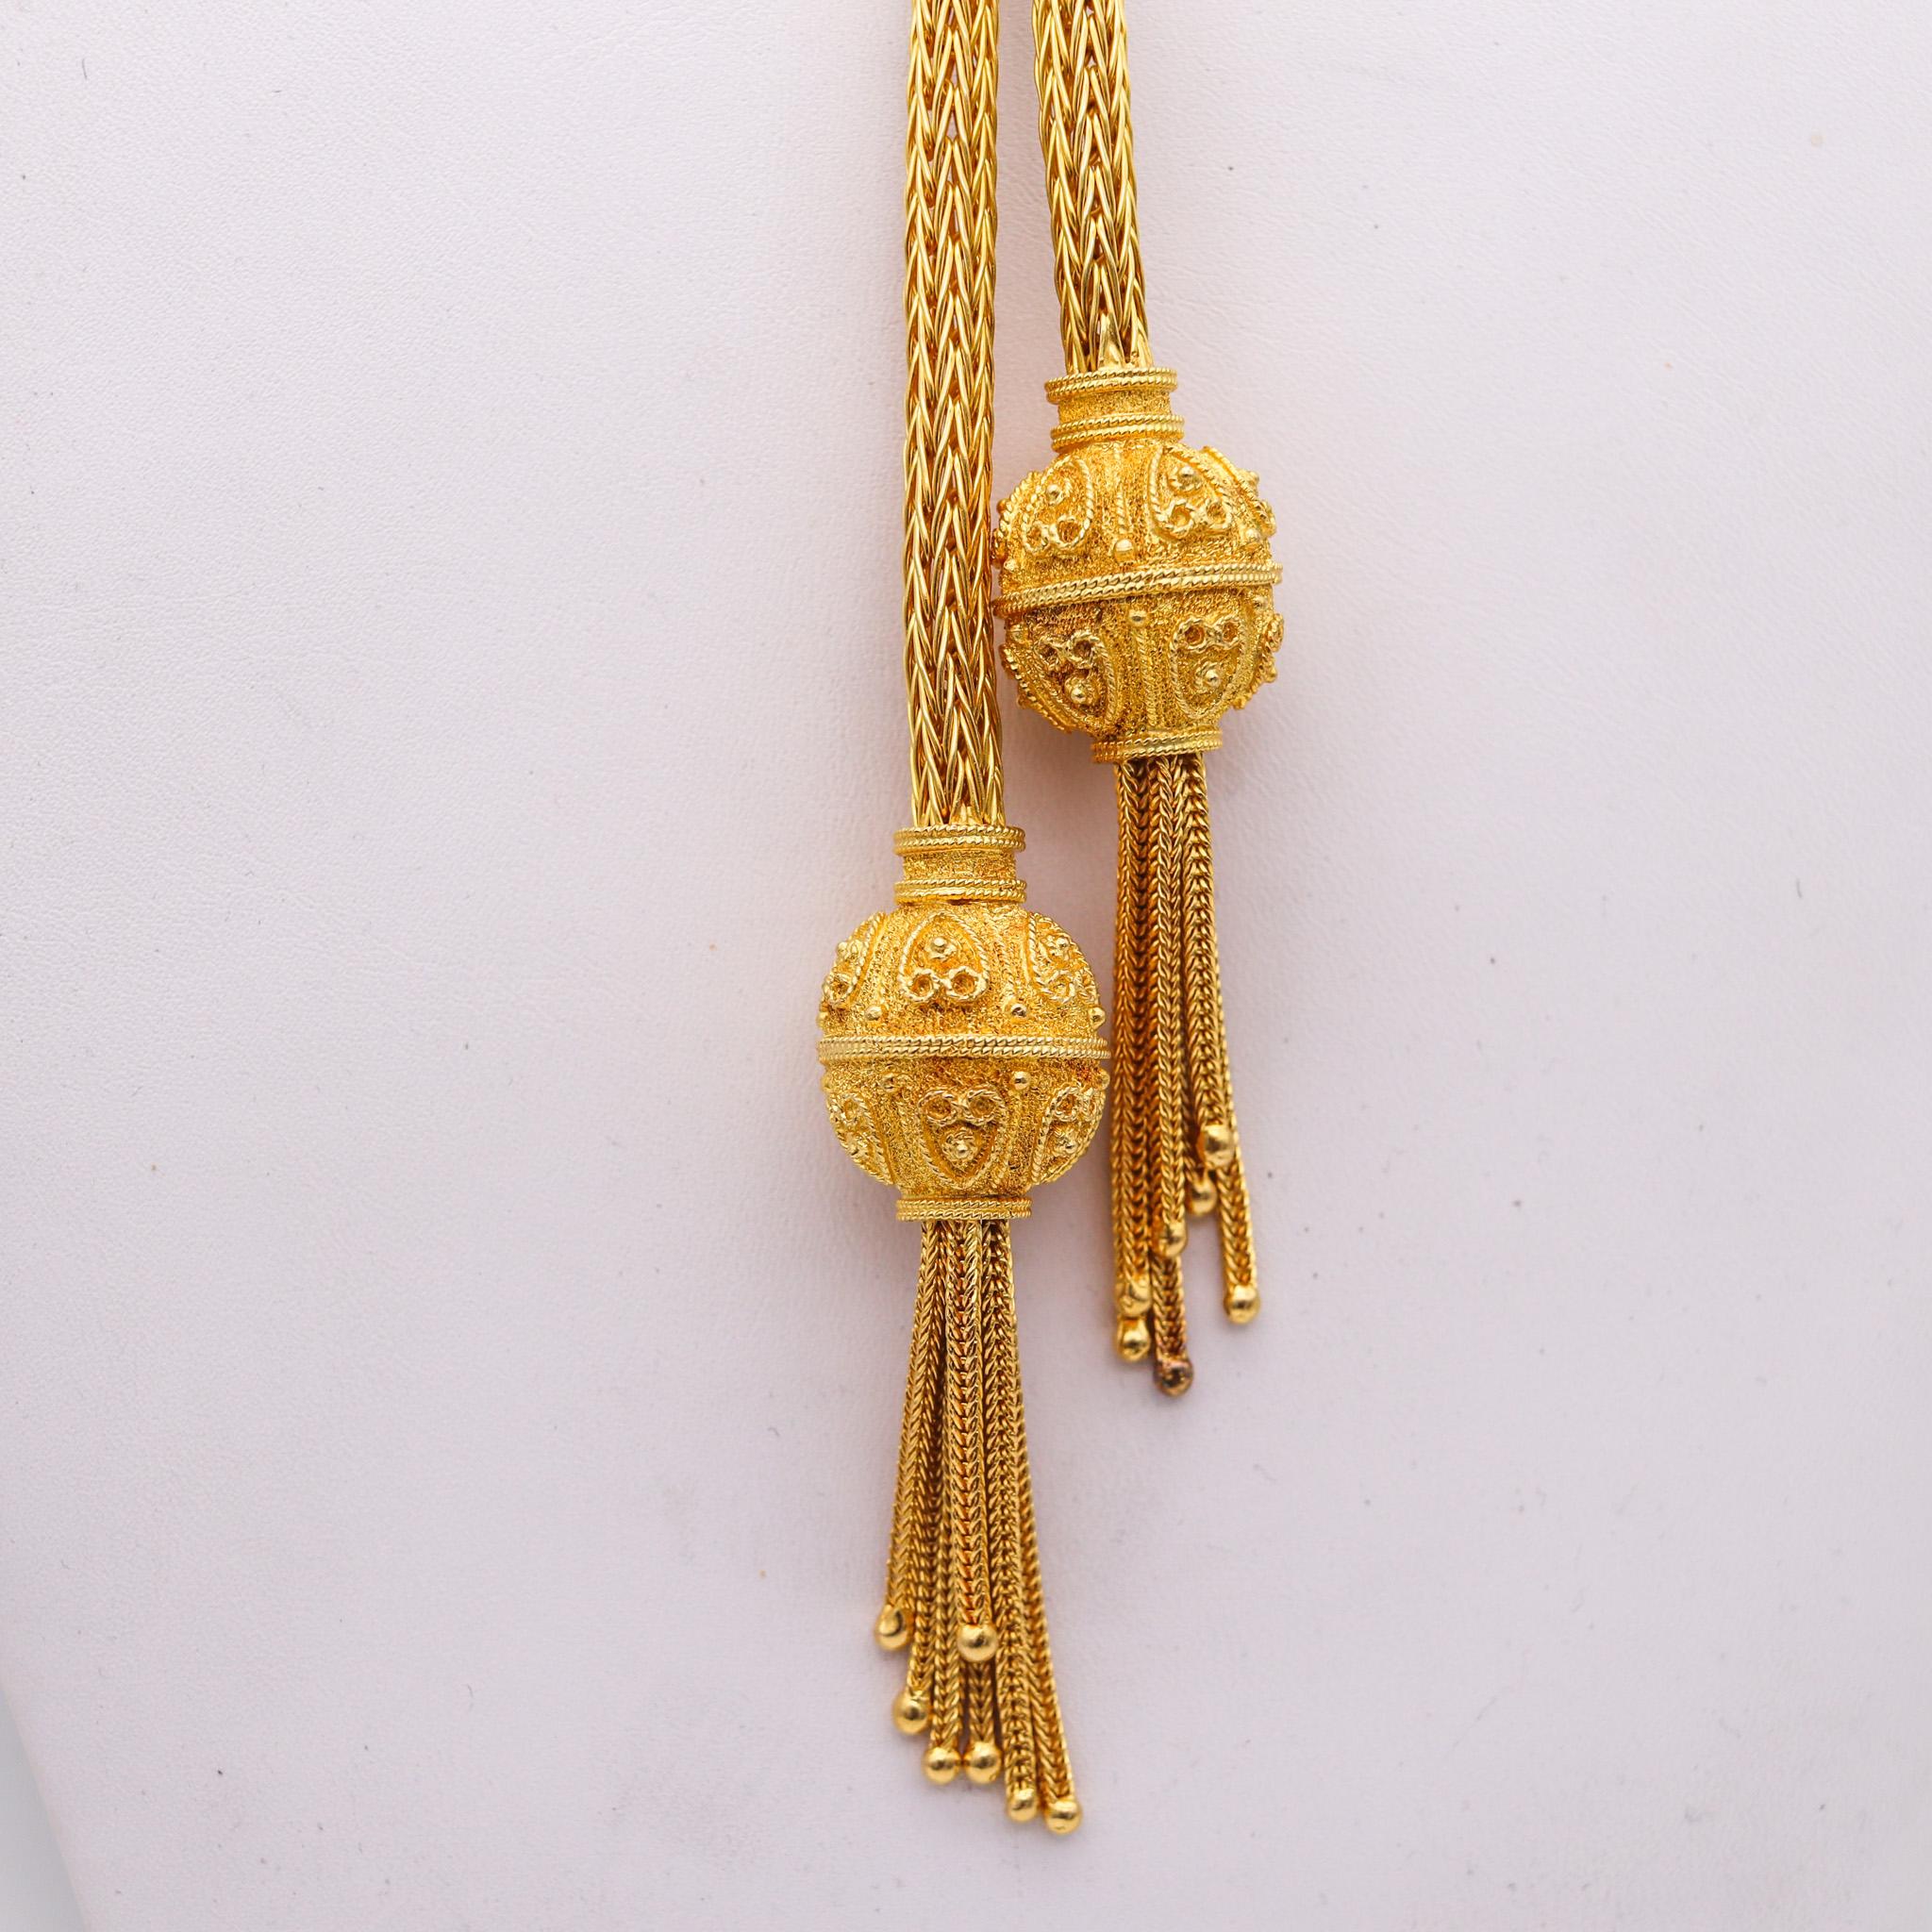 Sautoir-Halskette, entworfen von Zolotas.

Wunderschöne Halskette, die Ende des 20. Jahrhunderts in Griechenland von dem Schmuckhaus Zolotas entworfen wurde. Diese elegante Halskette wurde aus einem Drahtgeflecht aus massivem 18-karätigem Gelbgold